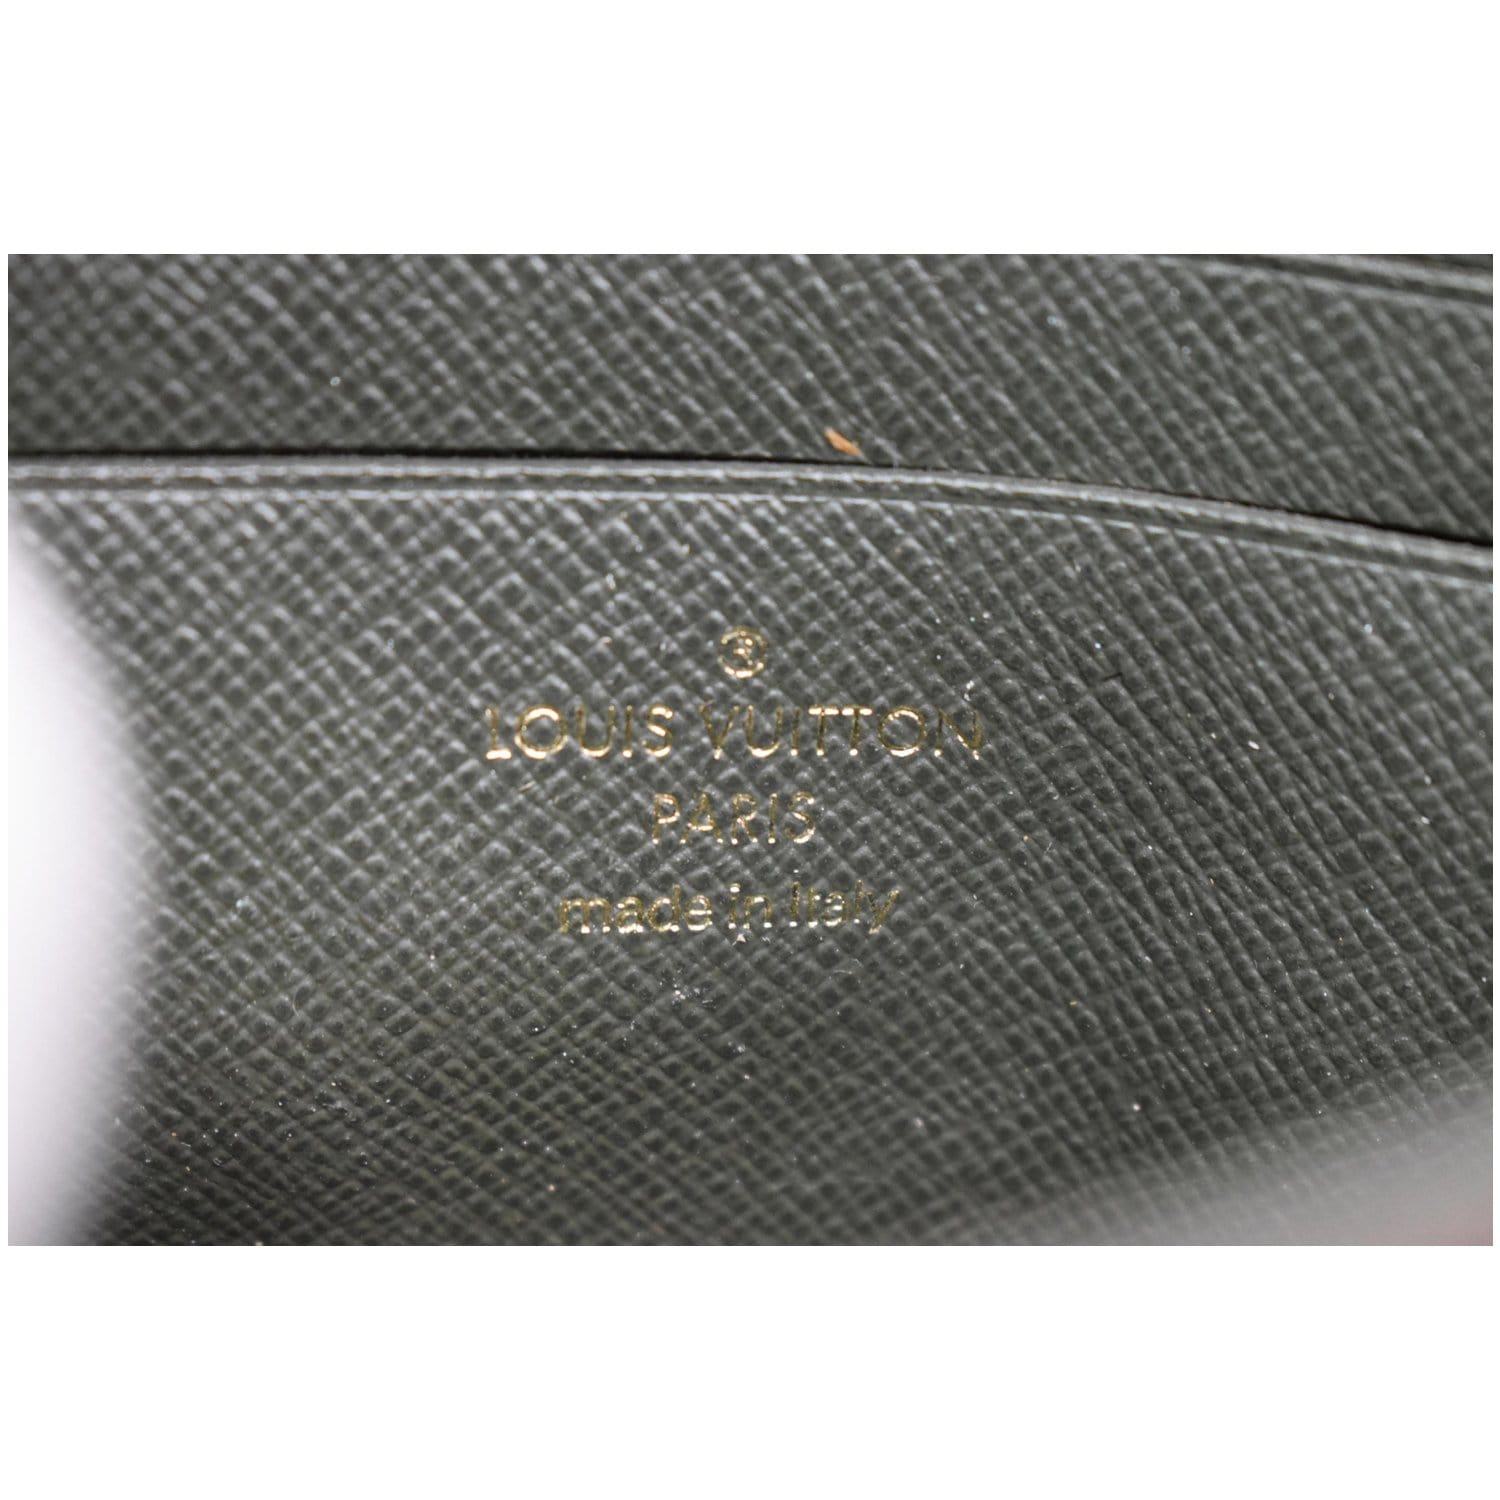 Louis Vuitton Felicie Strap & Go at Jill's Consignment